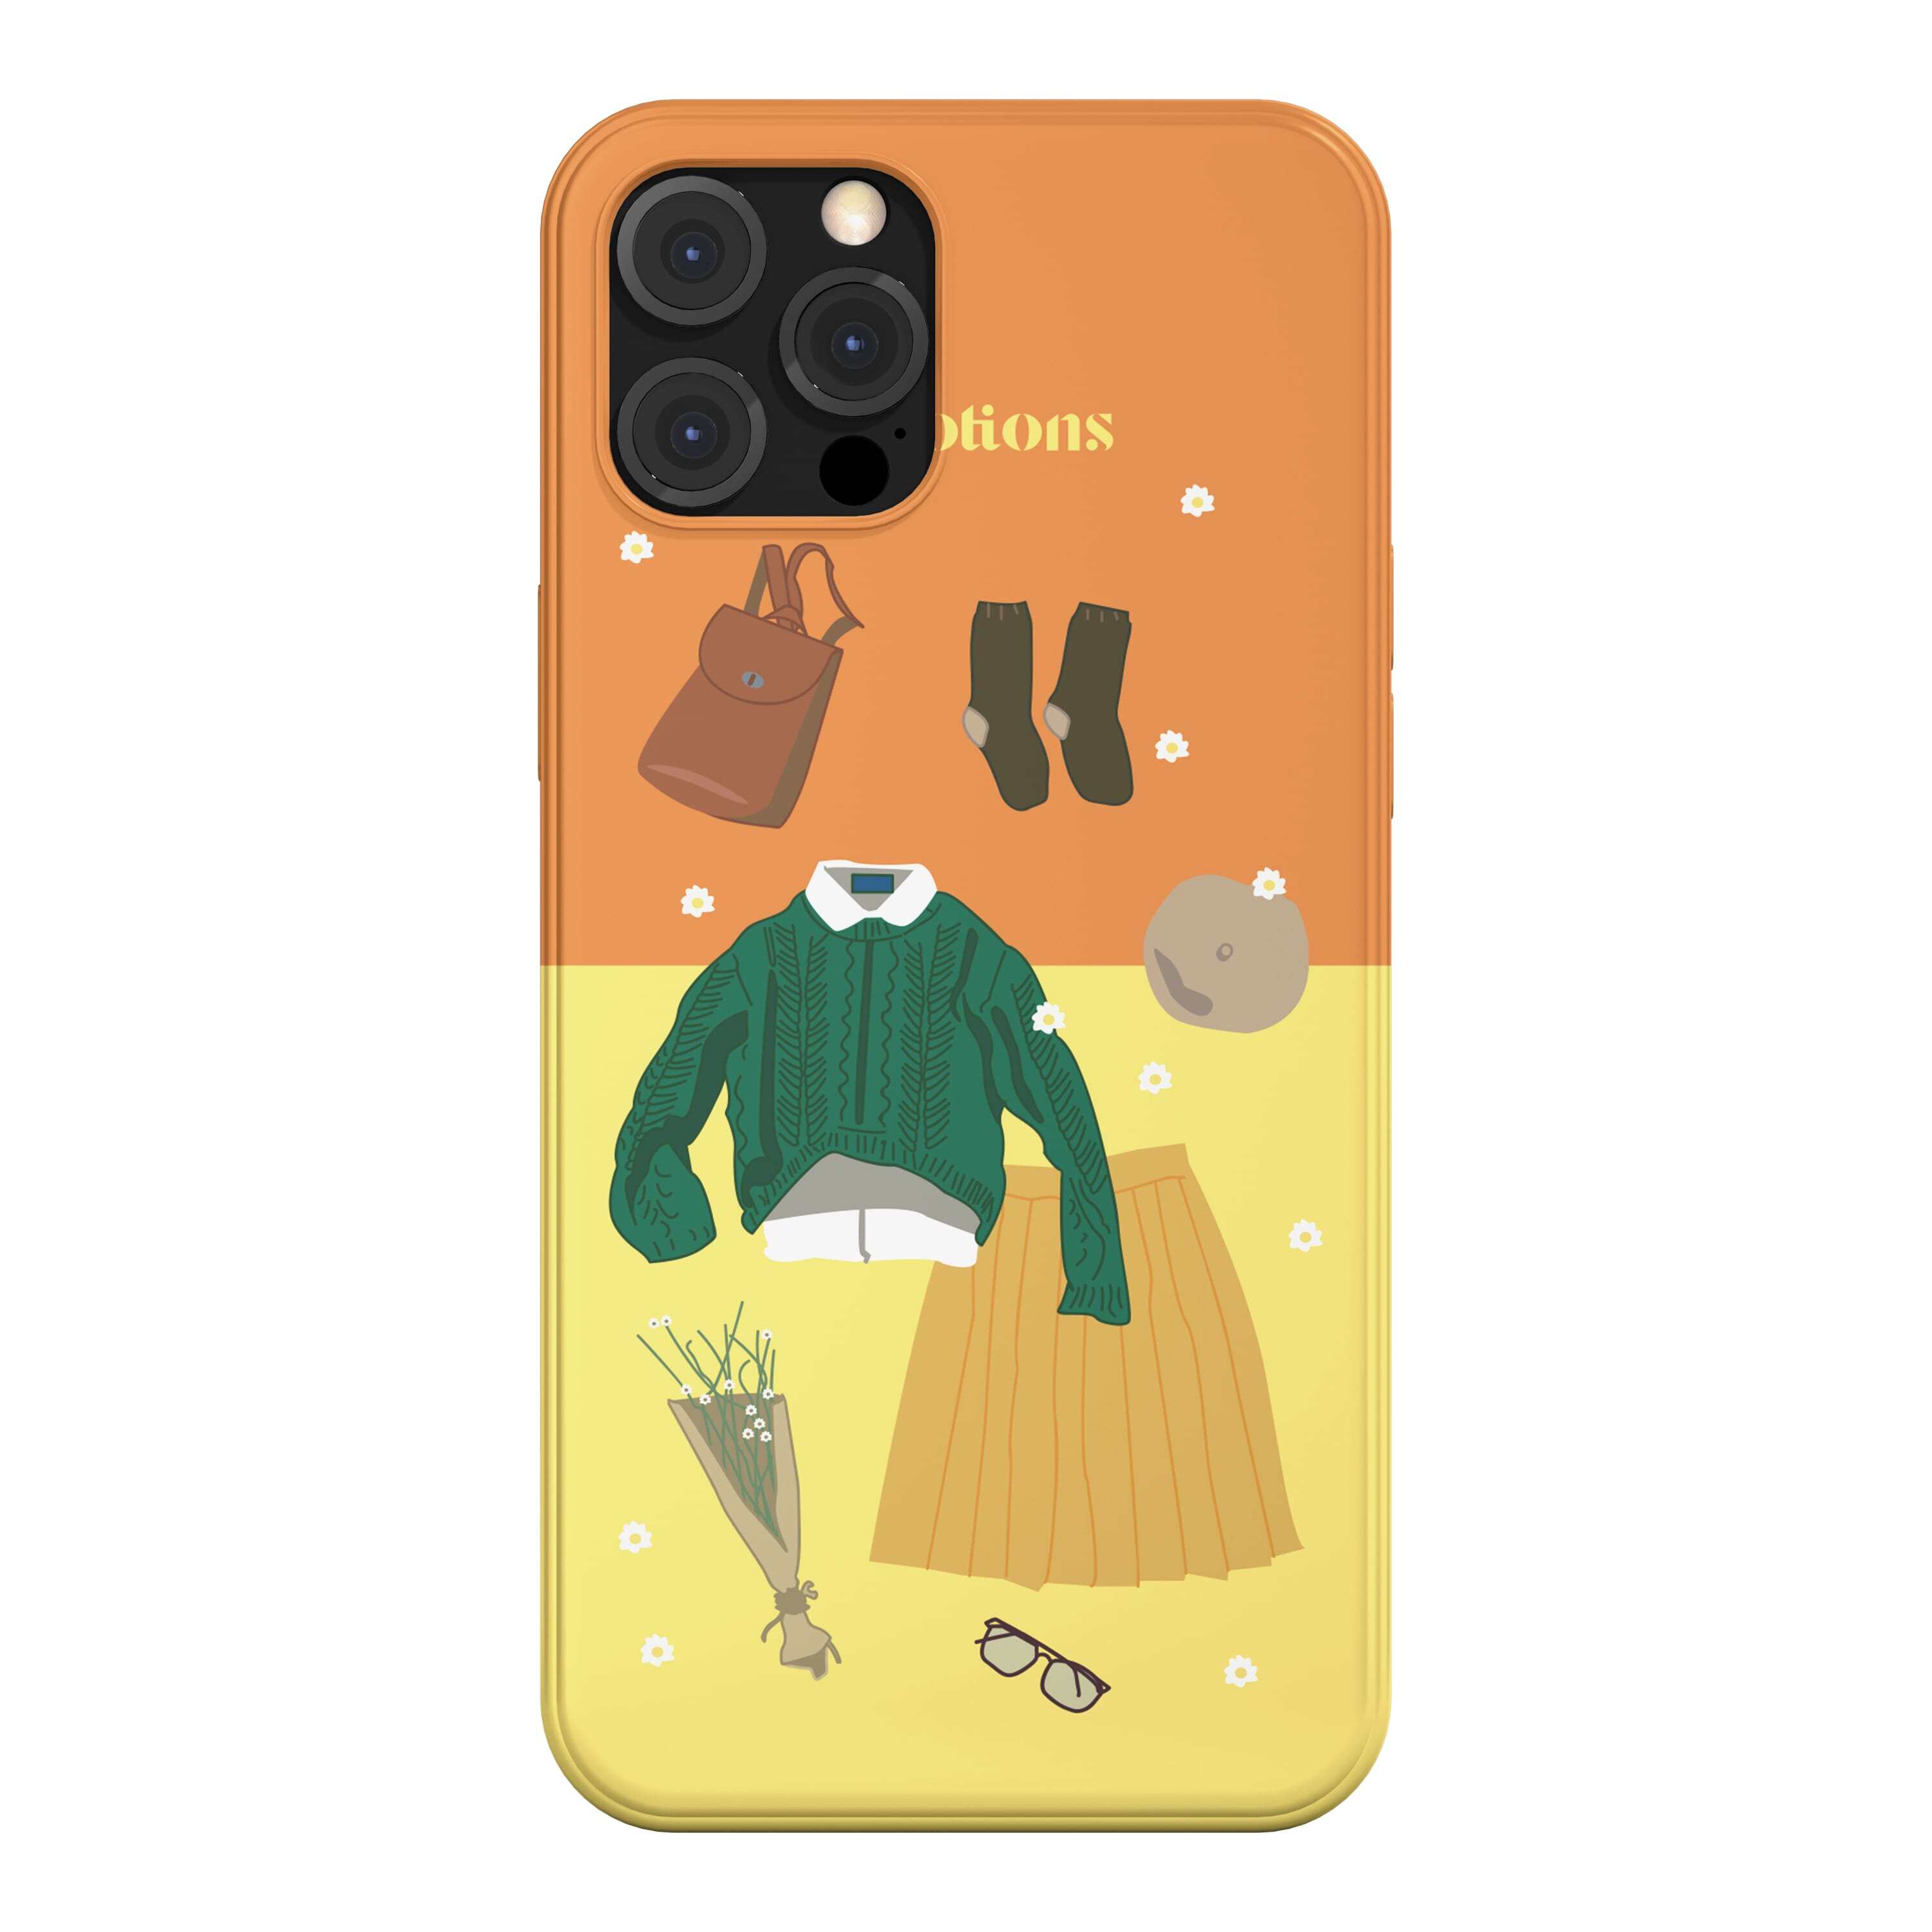 韓国 スマホケース [SUN] 絵画風 おしゃれ アート デザイナーズ iPhone Android 携帯カバー お出かけ ファッション オレンジ (SUN03) アイフォン ギャラクシー Galaxy